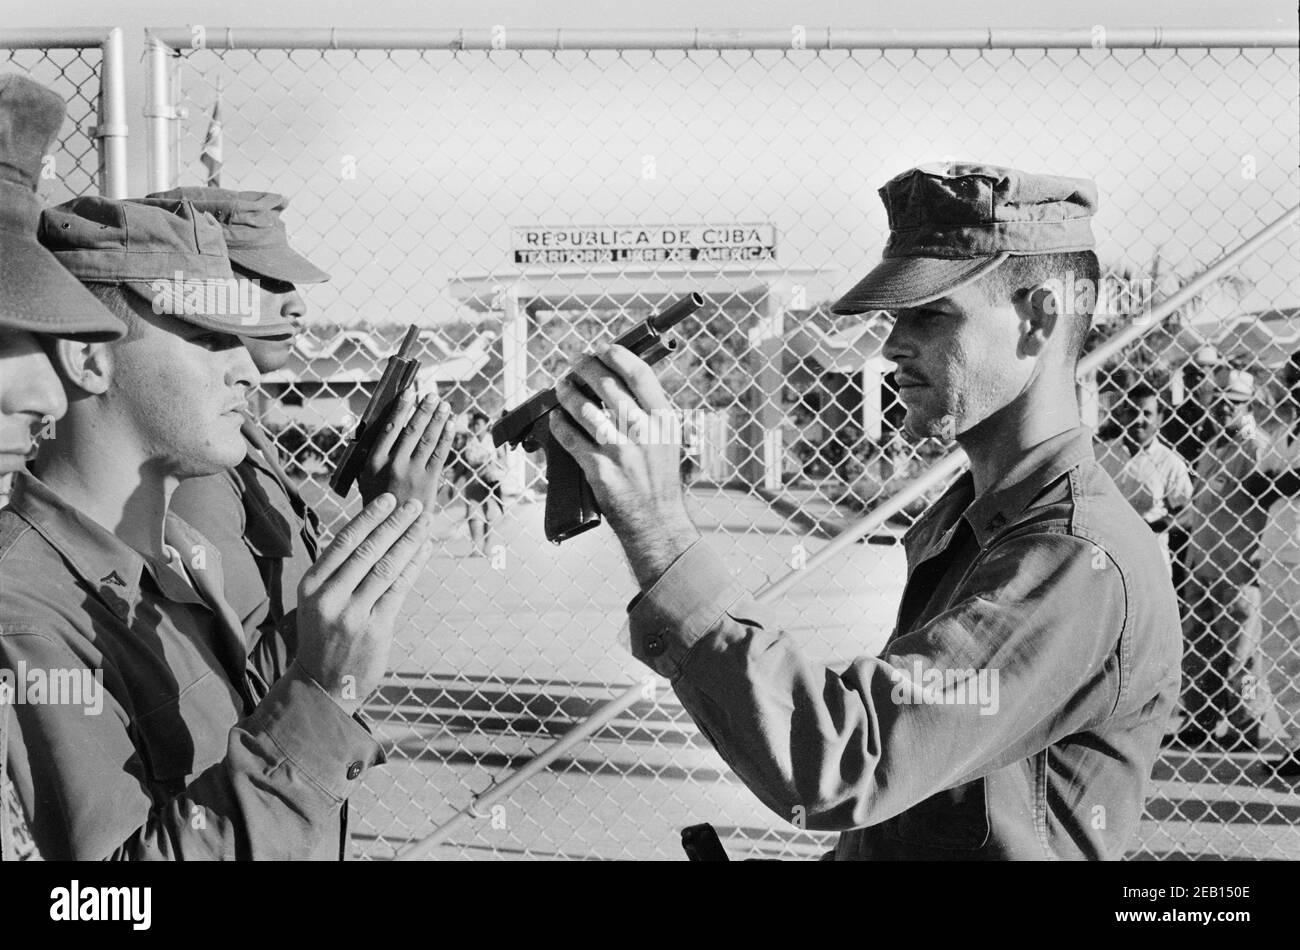 Guardia militare degli Stati Uniti, Guantanamo Bay base navale degli Stati Uniti, Cuba, Warren K. Leffler, 12 novembre 1962 Foto Stock